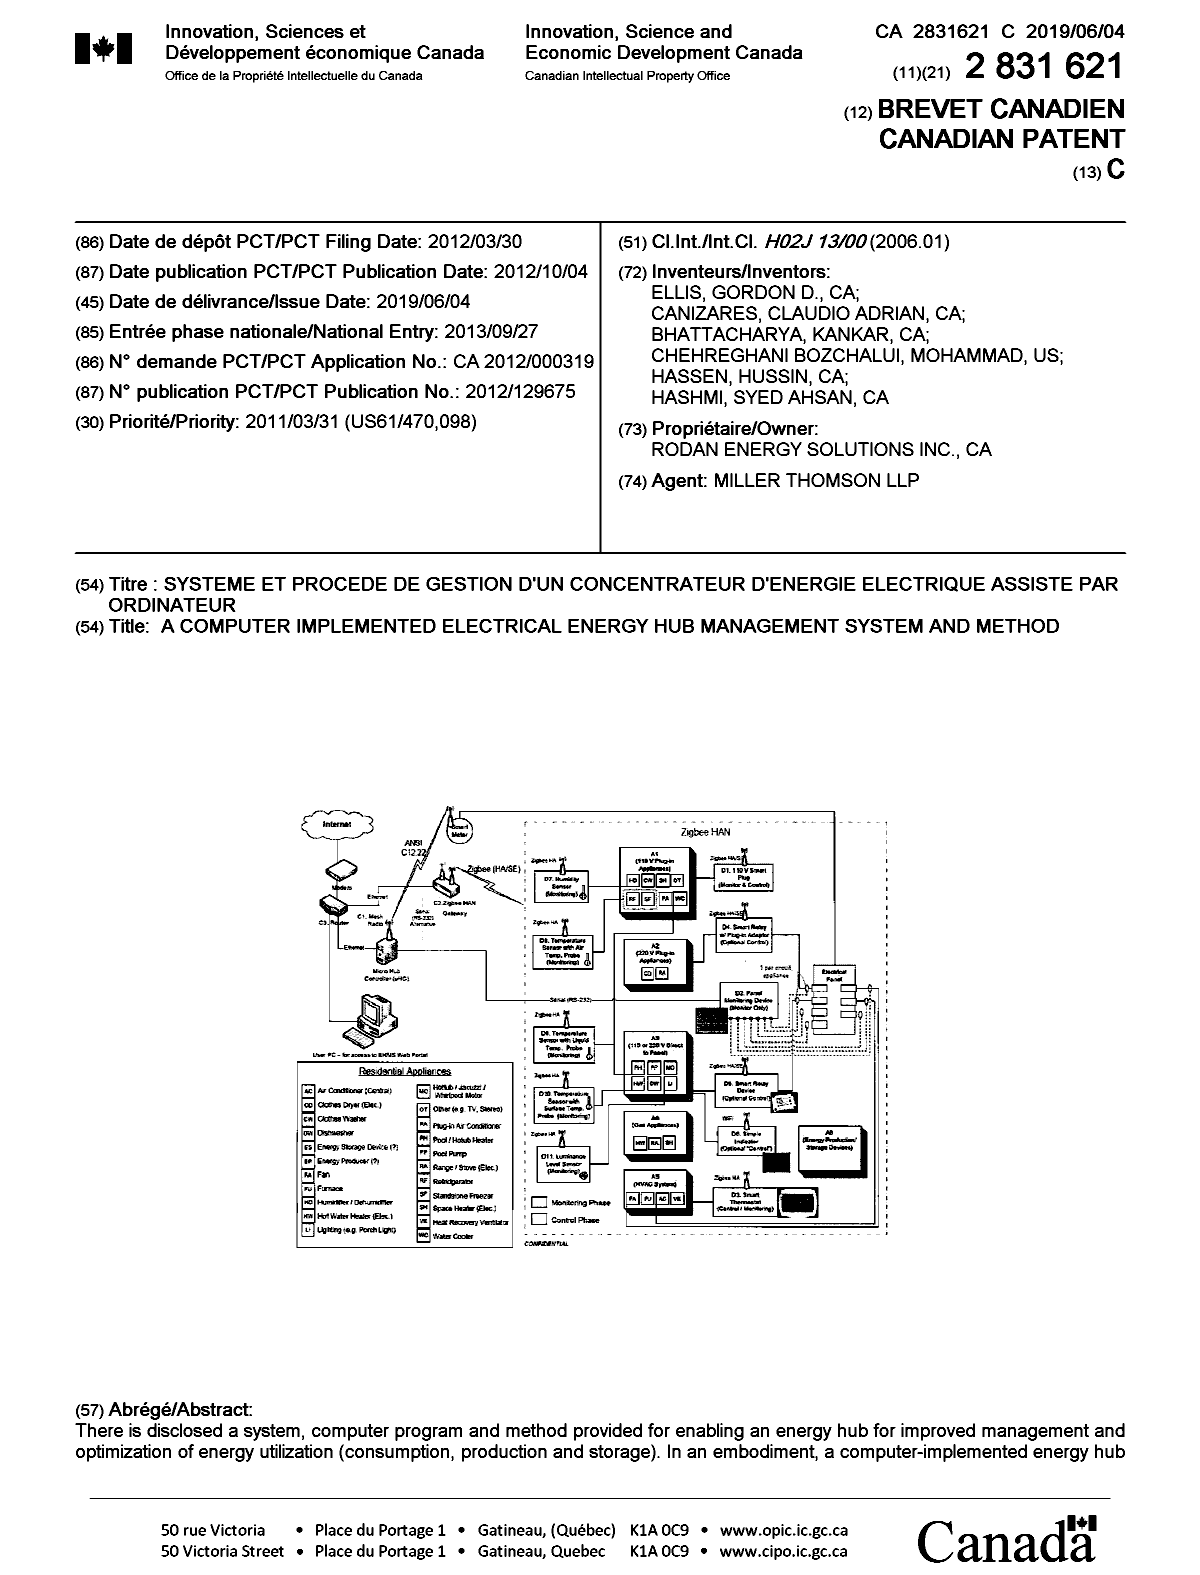 Document de brevet canadien 2831621. Page couverture 20190507. Image 1 de 2